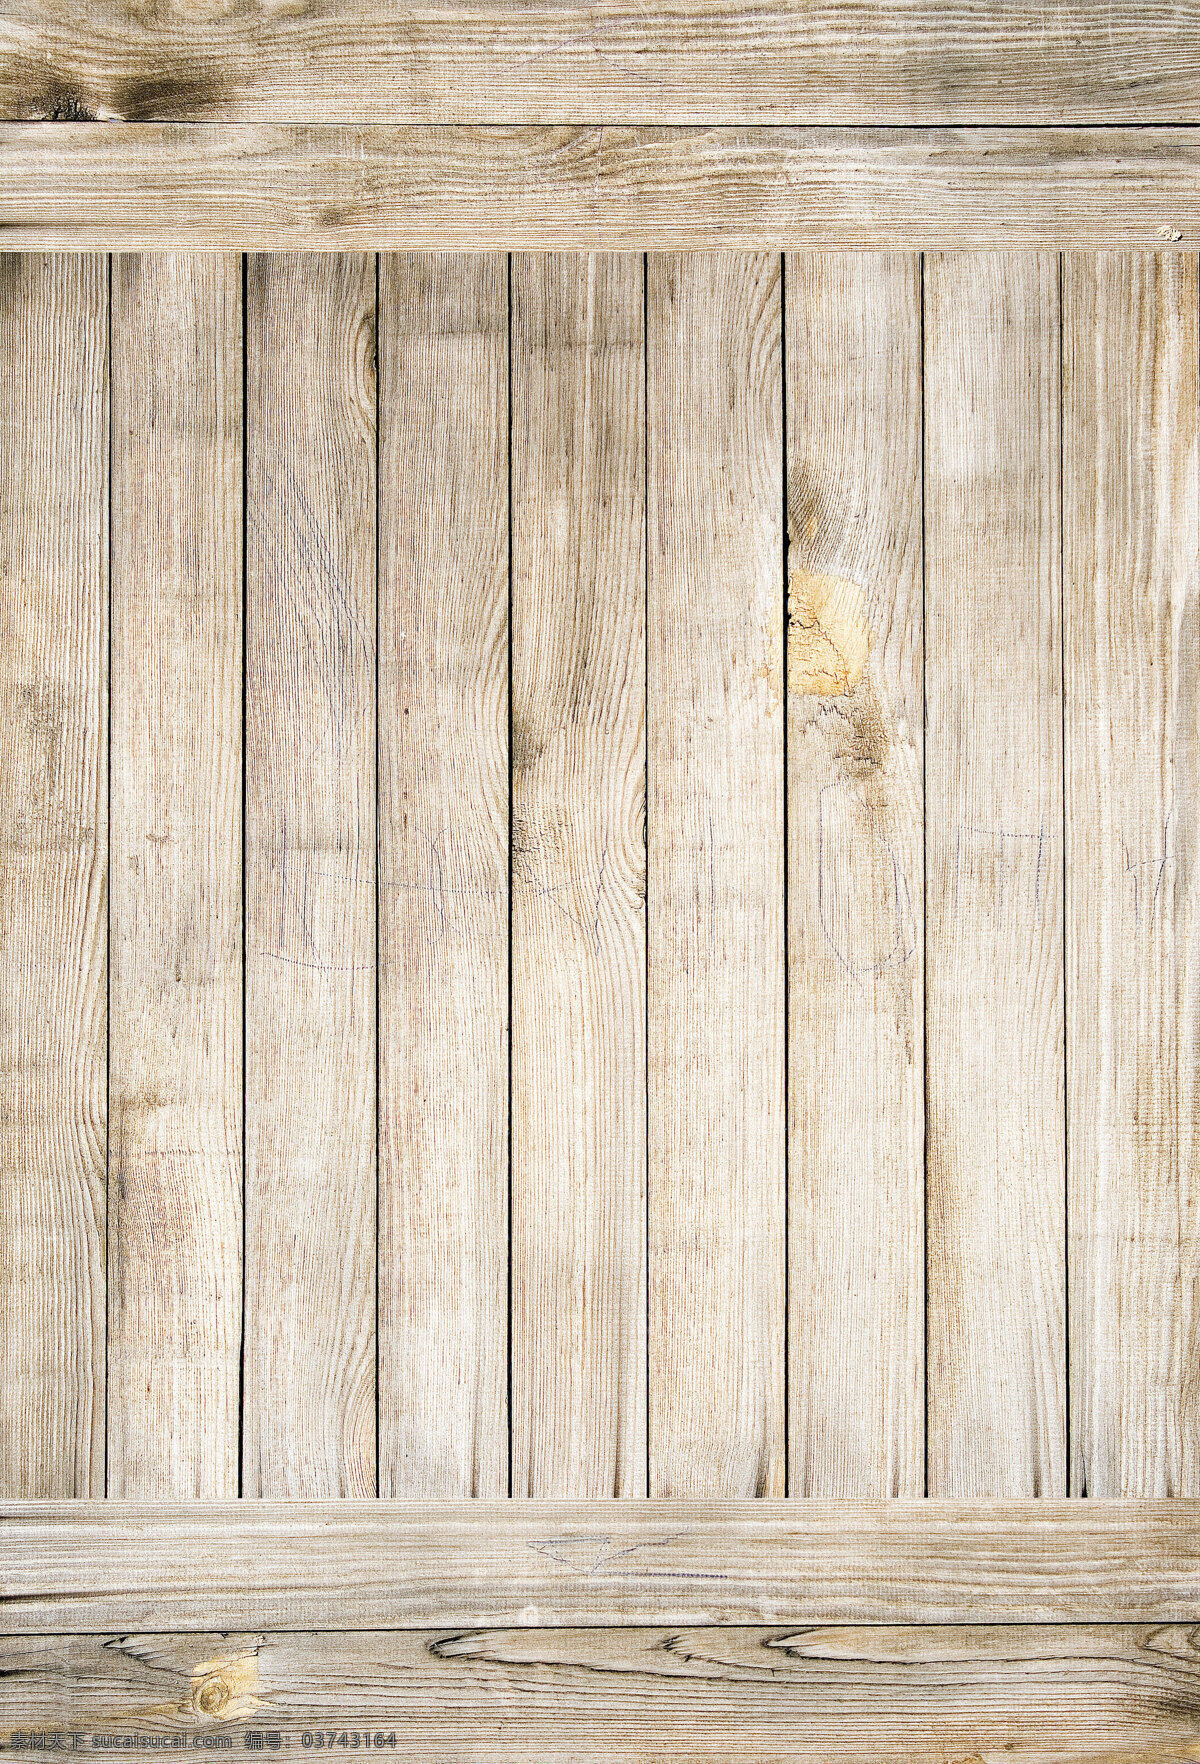 泛 白 木板 条 背景 高清 大图 木纹 木质 材质 贴图 纹路 横向 纵向 发白 灰色